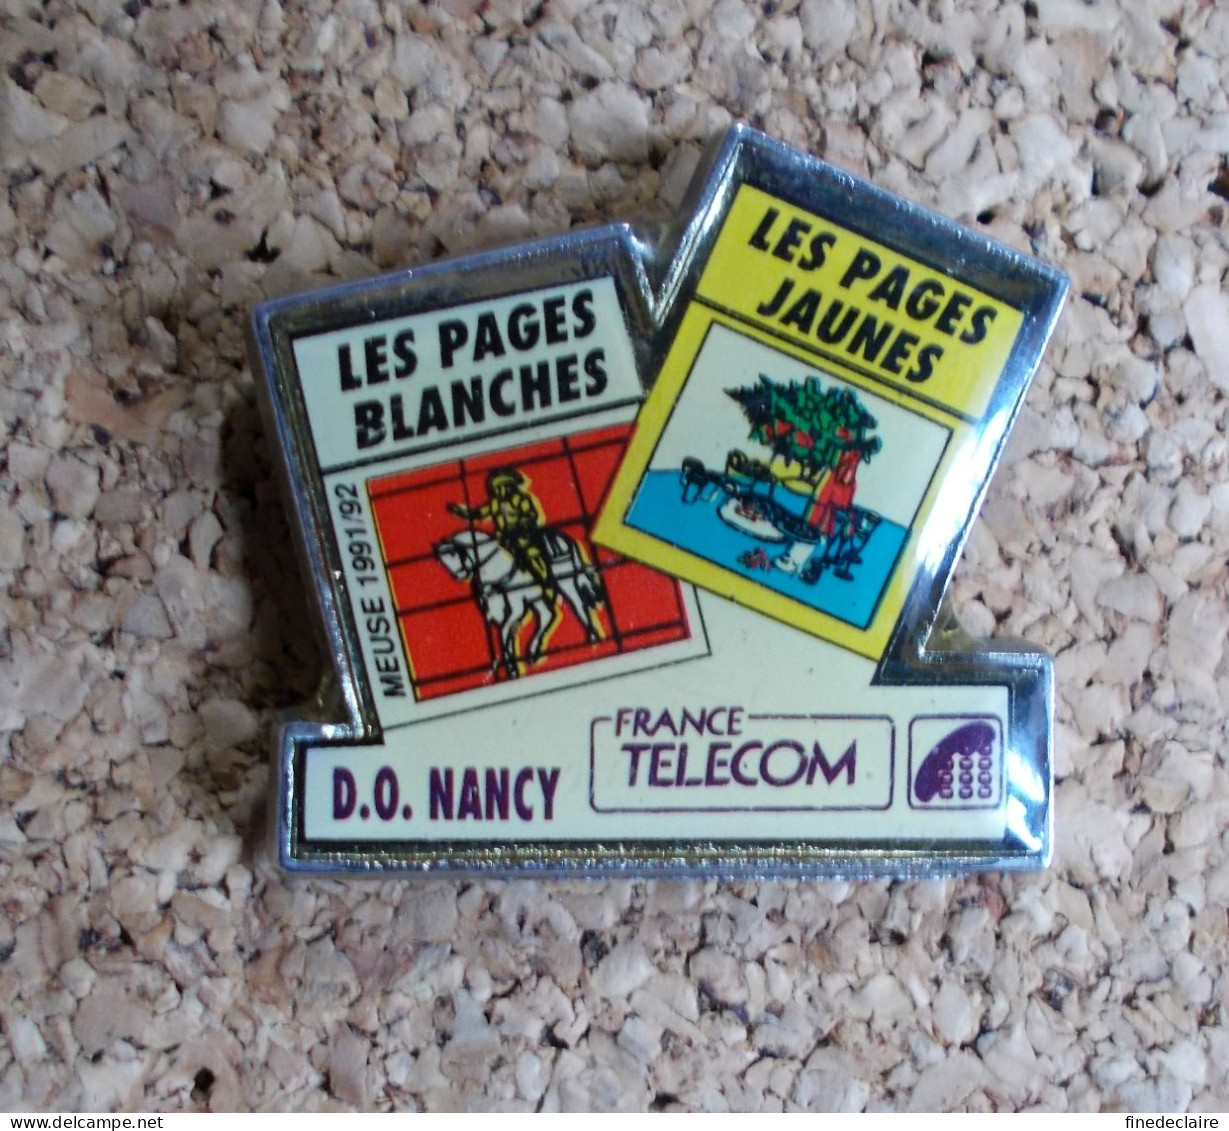 Pin's - France Télécom - D.O. Nancy Les Pages Blanches, Les Pages Jaunes - Meuse 1991/92 - France Télécom